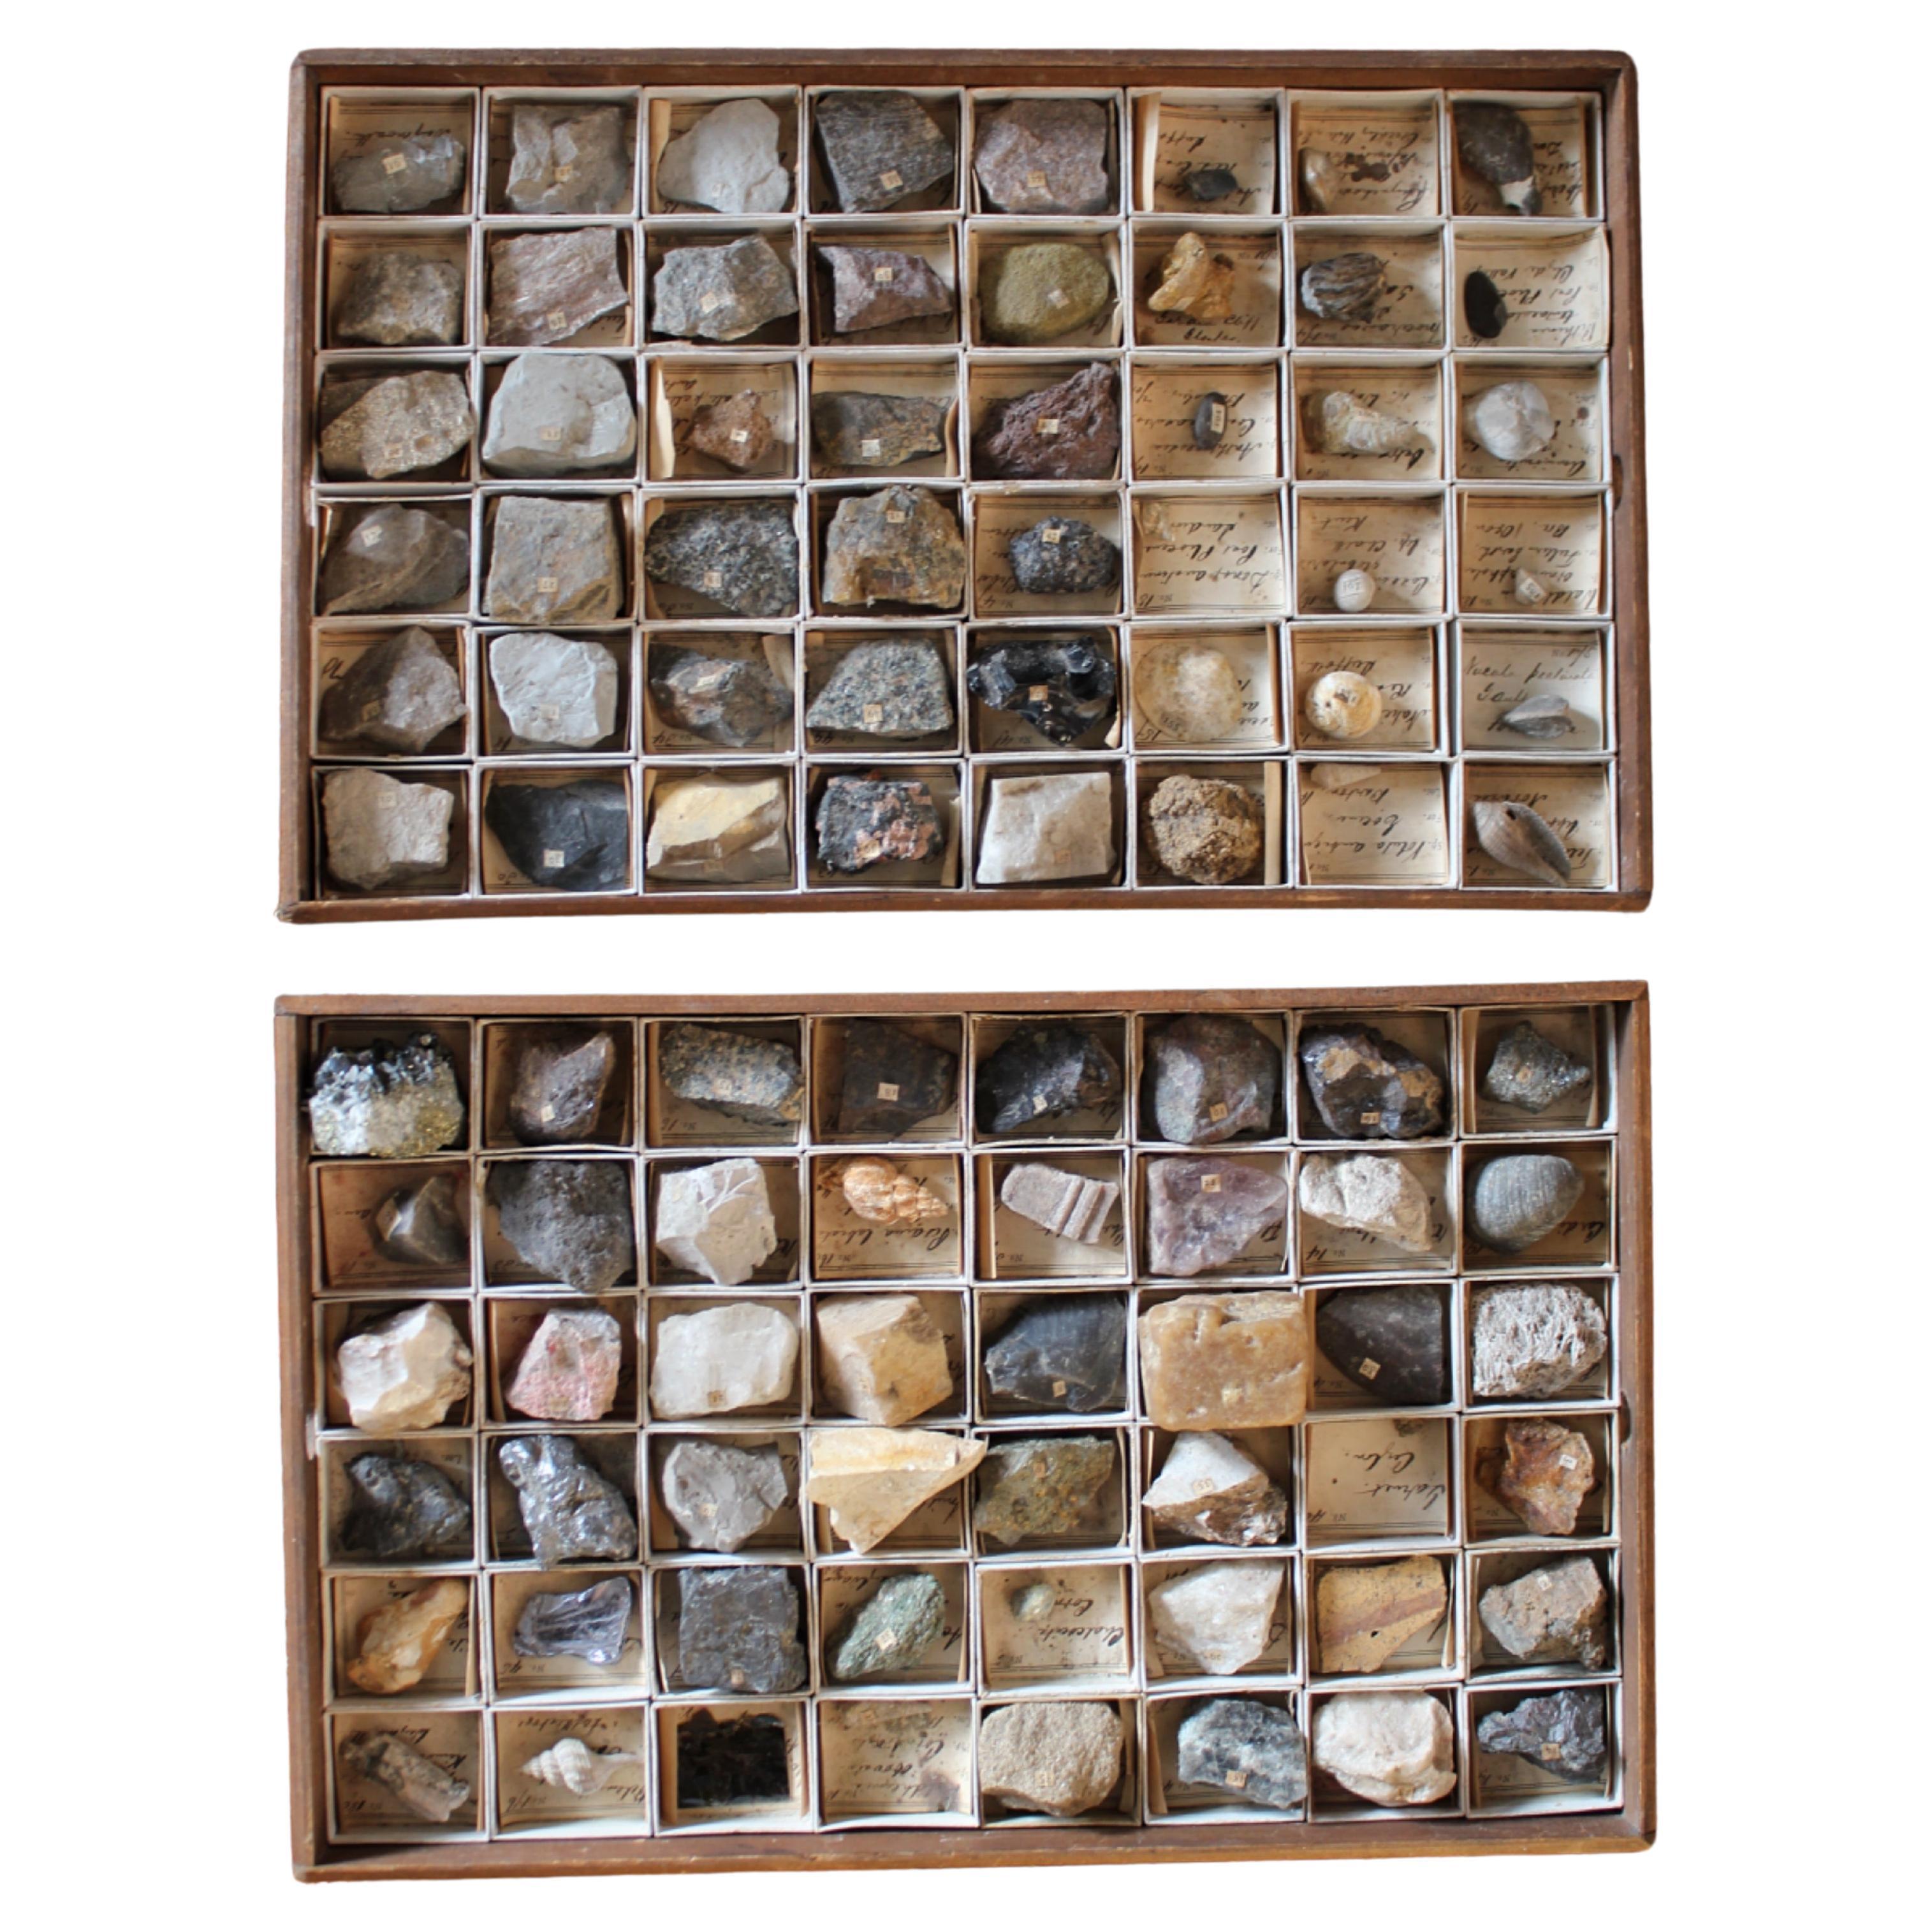 Gregory Bottley Wissenschaftliche Sammlung von Mineral Fossilienschalen aus dem späten 19. Jahrhundert 